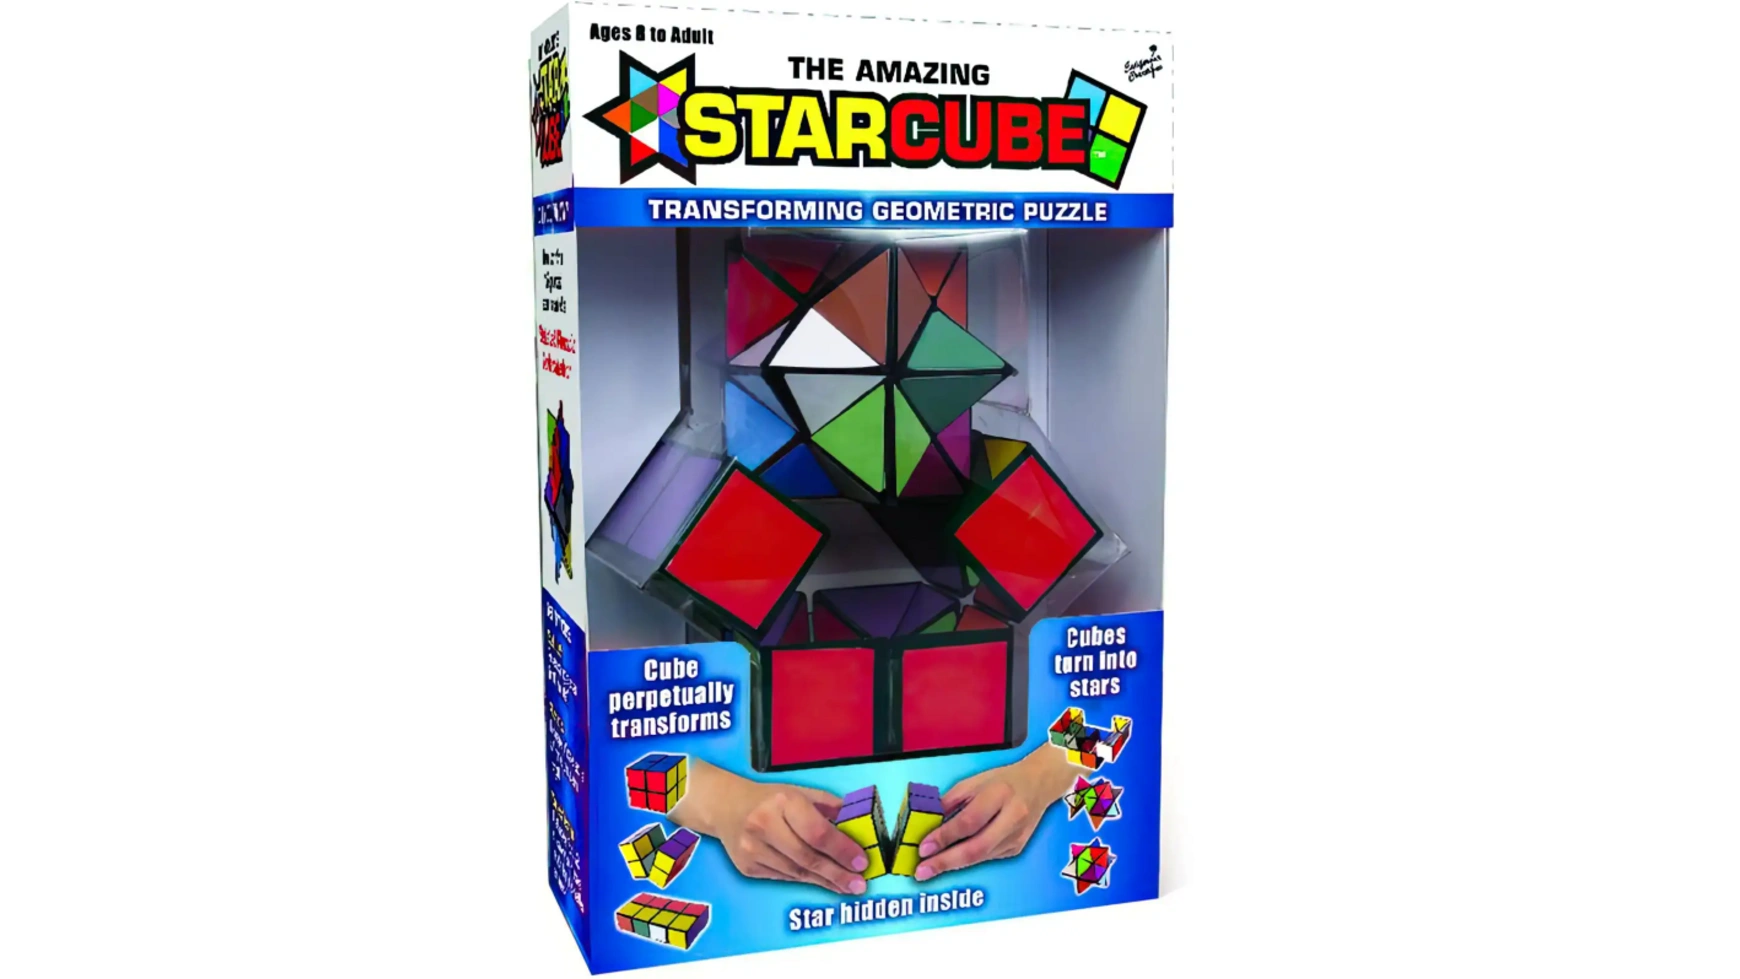 Звездный волшебный куб Elliot StarCube игра на ловкость и терпение, 5,5 х 5,5 см, красочный магнитный куб moyu кубик рубика rs skewb 3x3 волшебный куб 3x3x3 куб рубика 3 × 3 специальная скоростная головоломка магниты детская игрушка